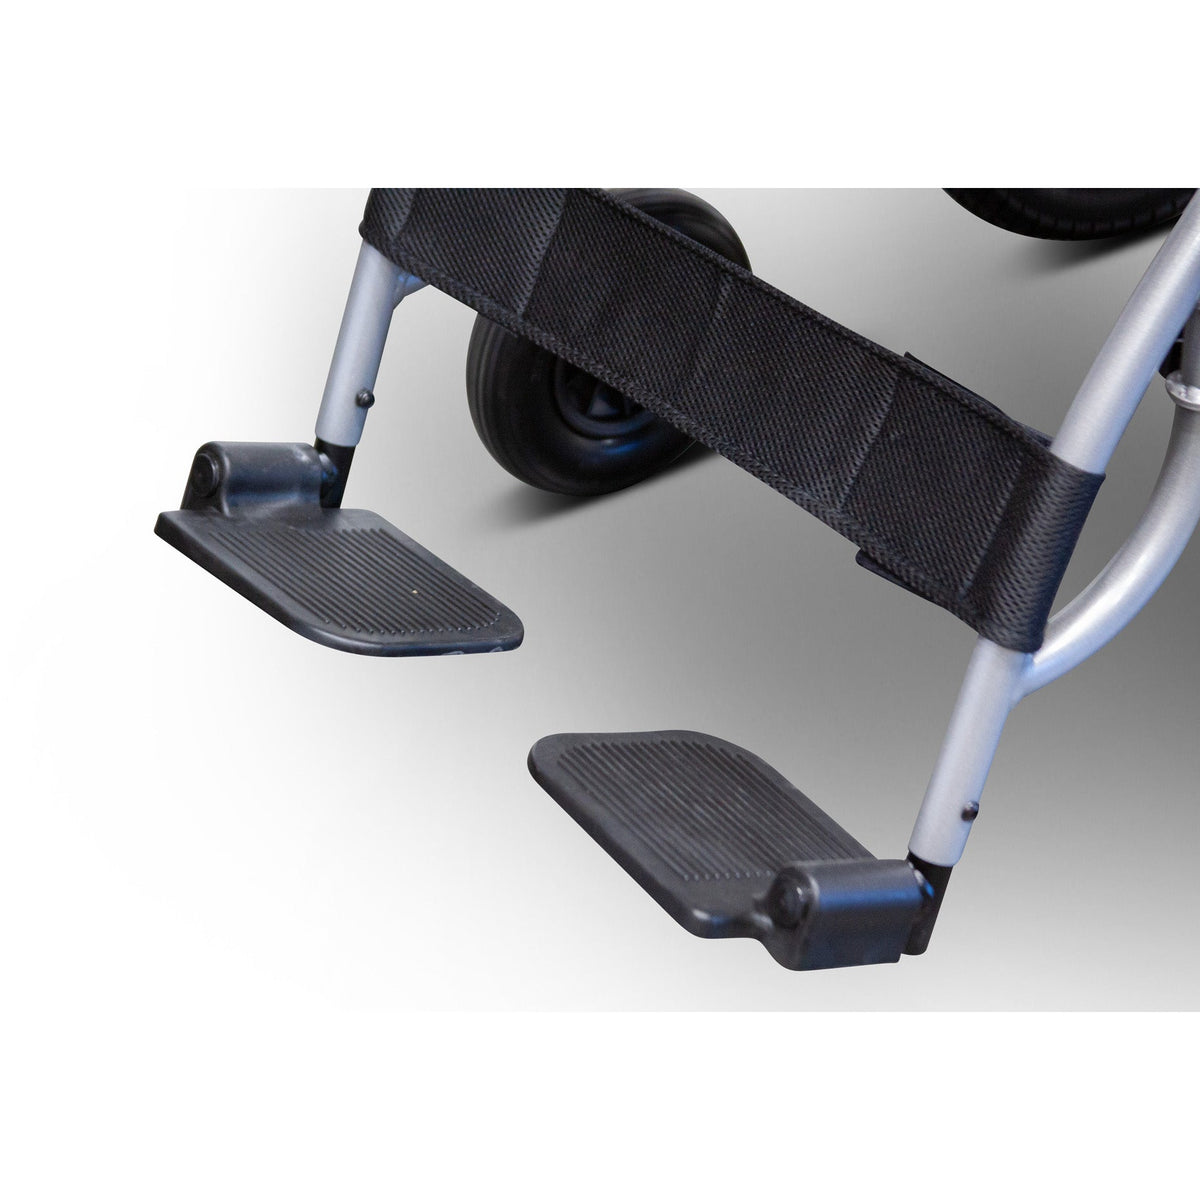 EWheels EW-M30 Compact Folding Power Wheelchair